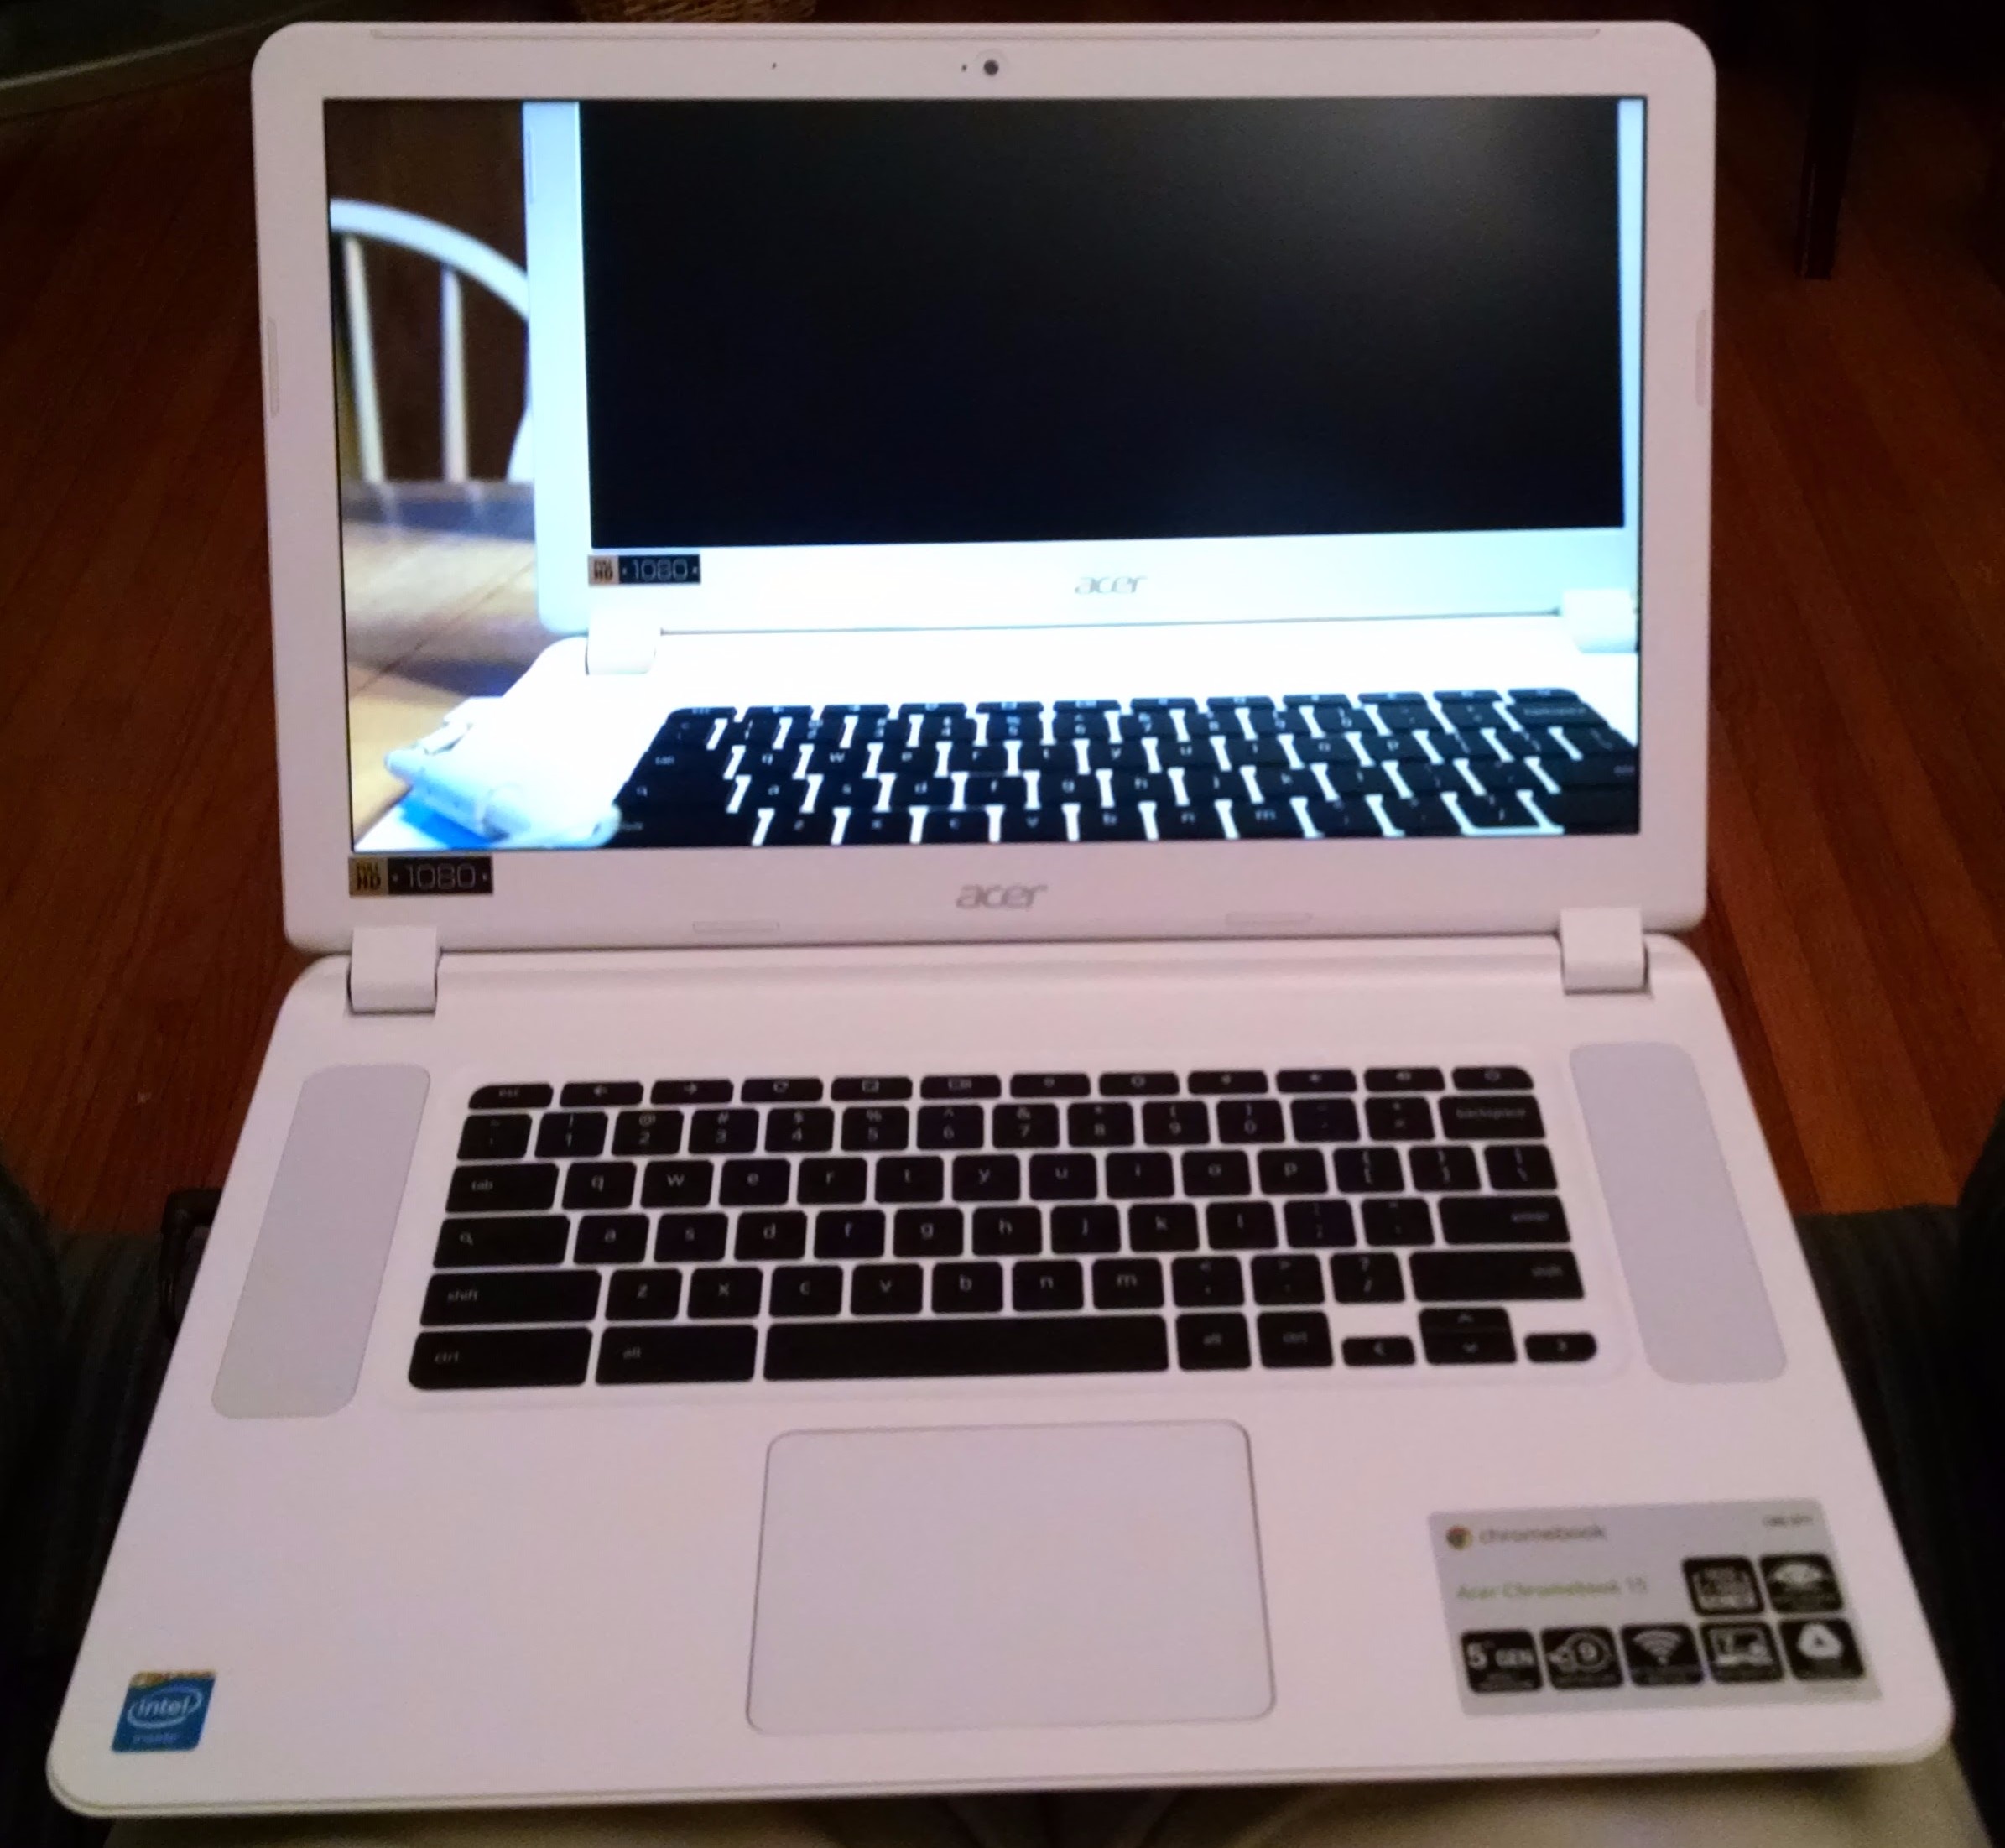 Acer Chromebook 15 CB5-571-C4G4